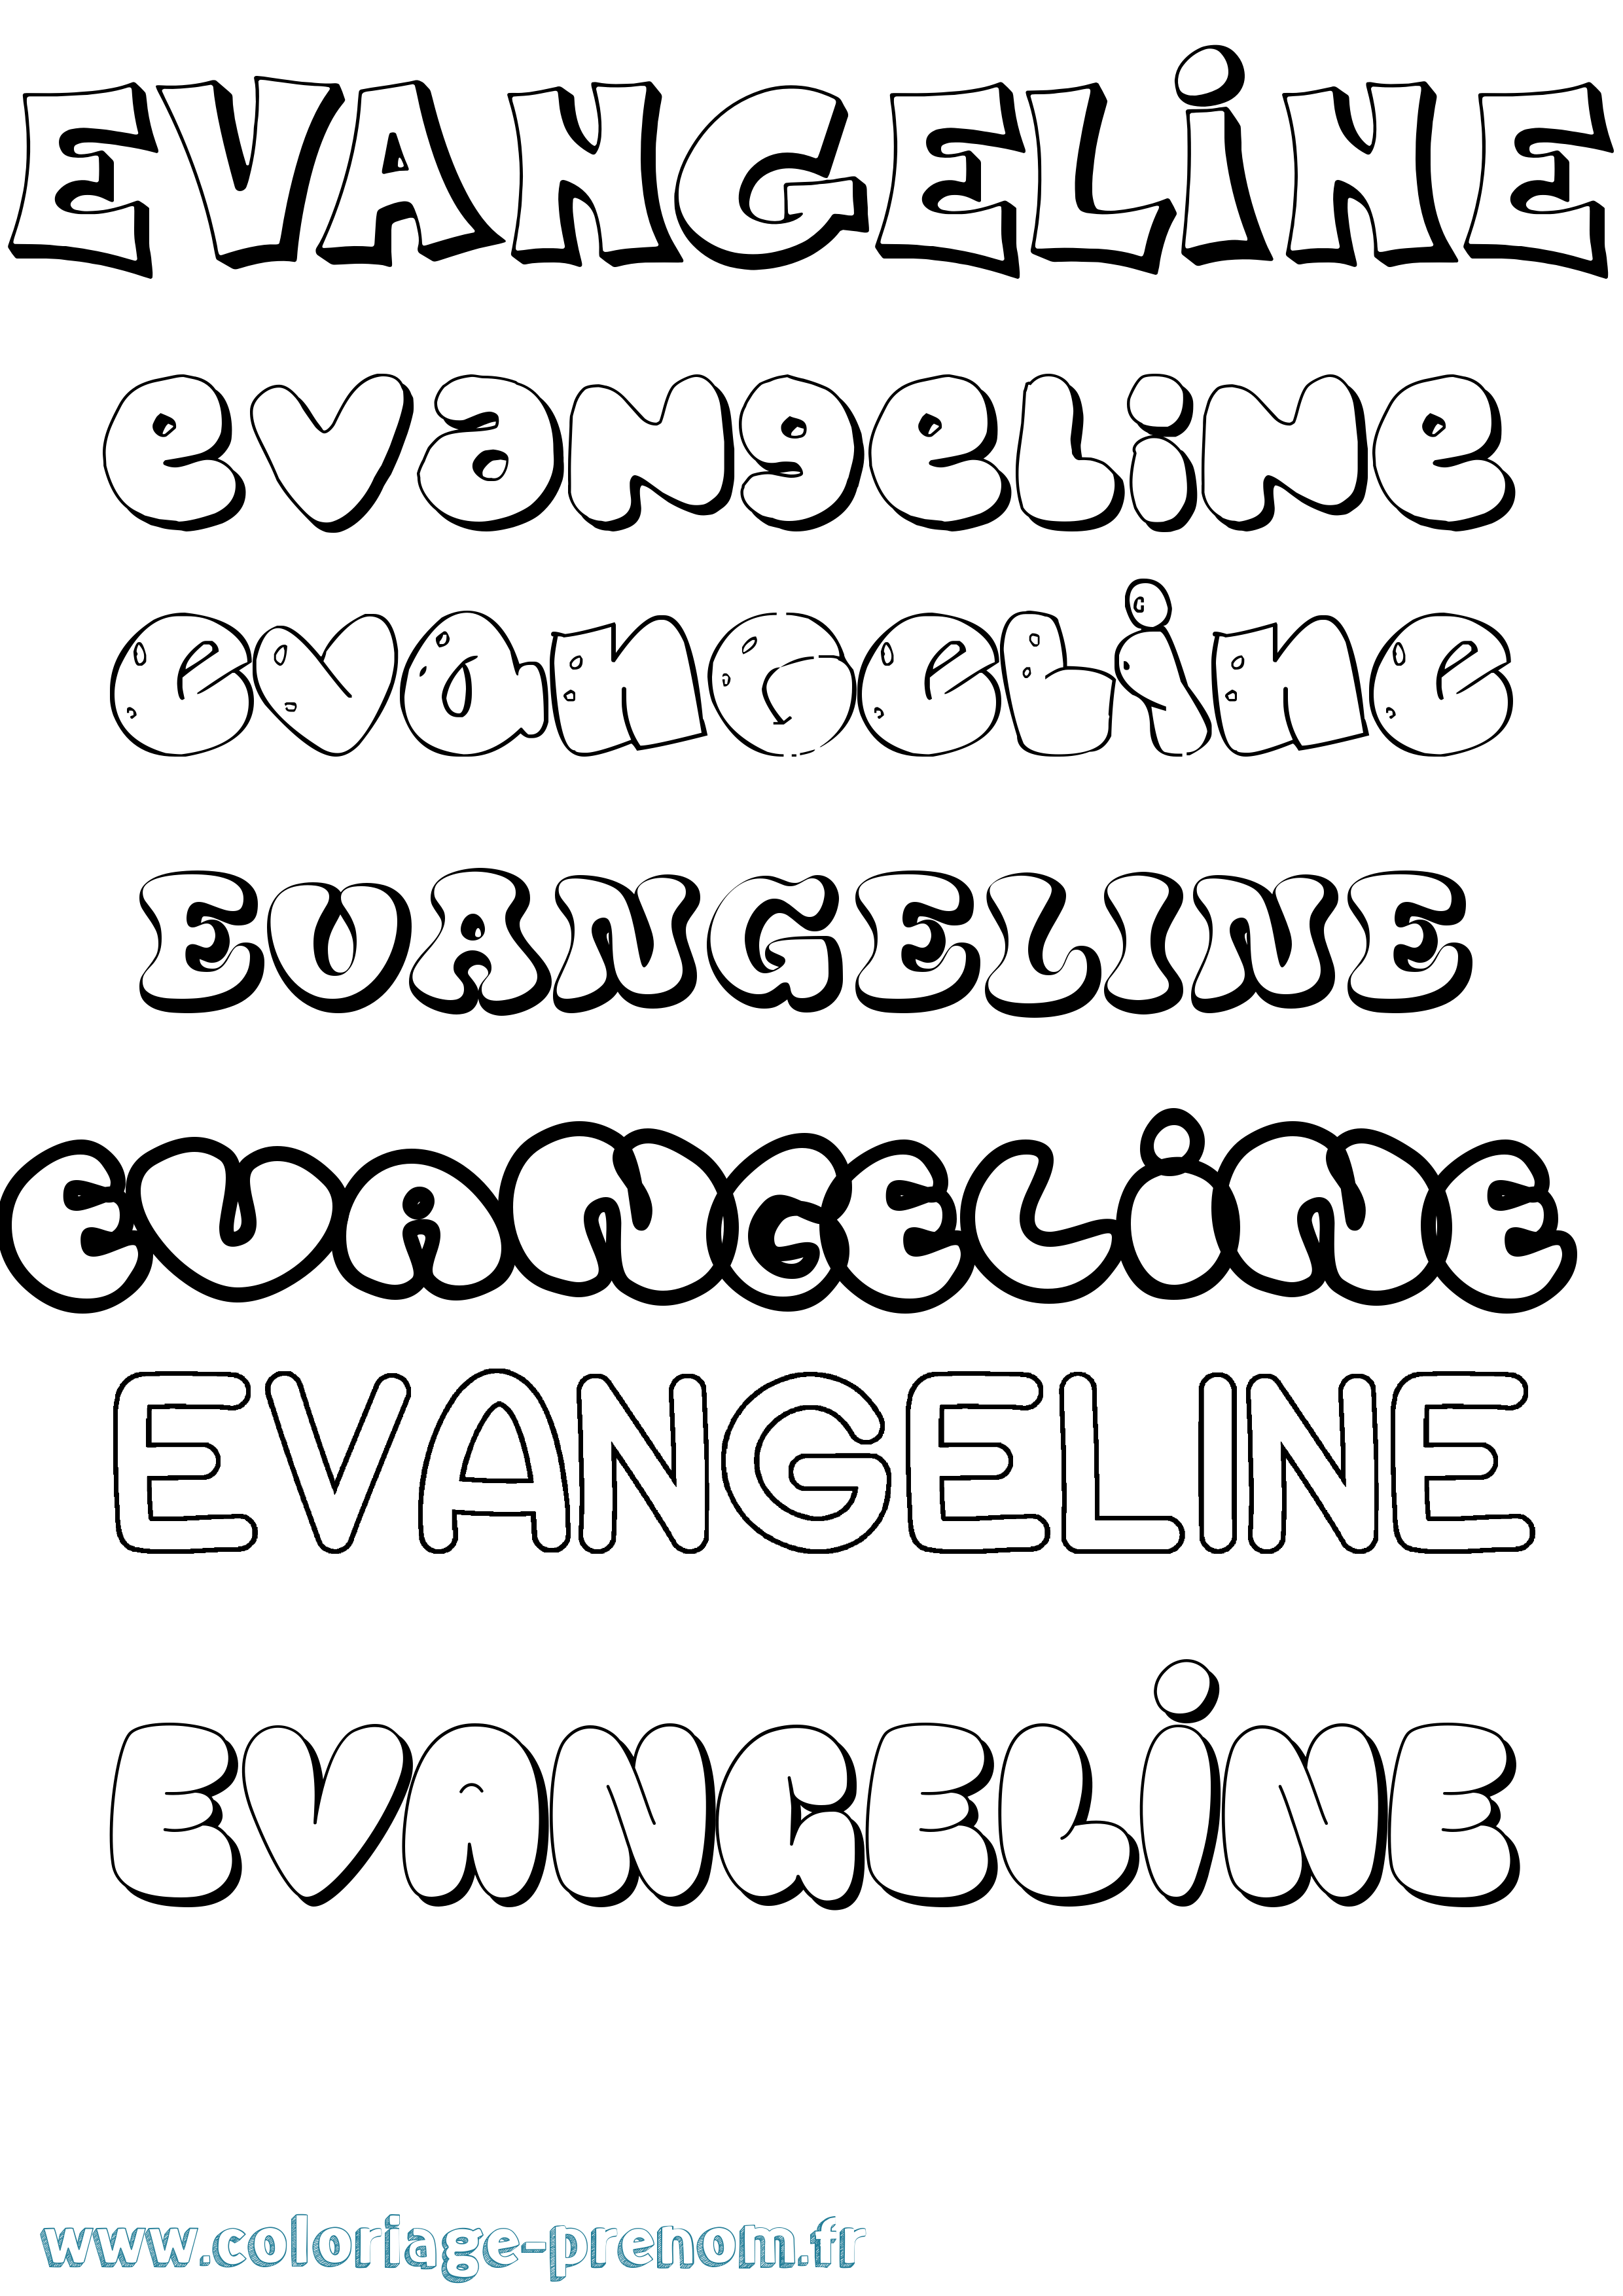 Coloriage prénom Evangeline Bubble